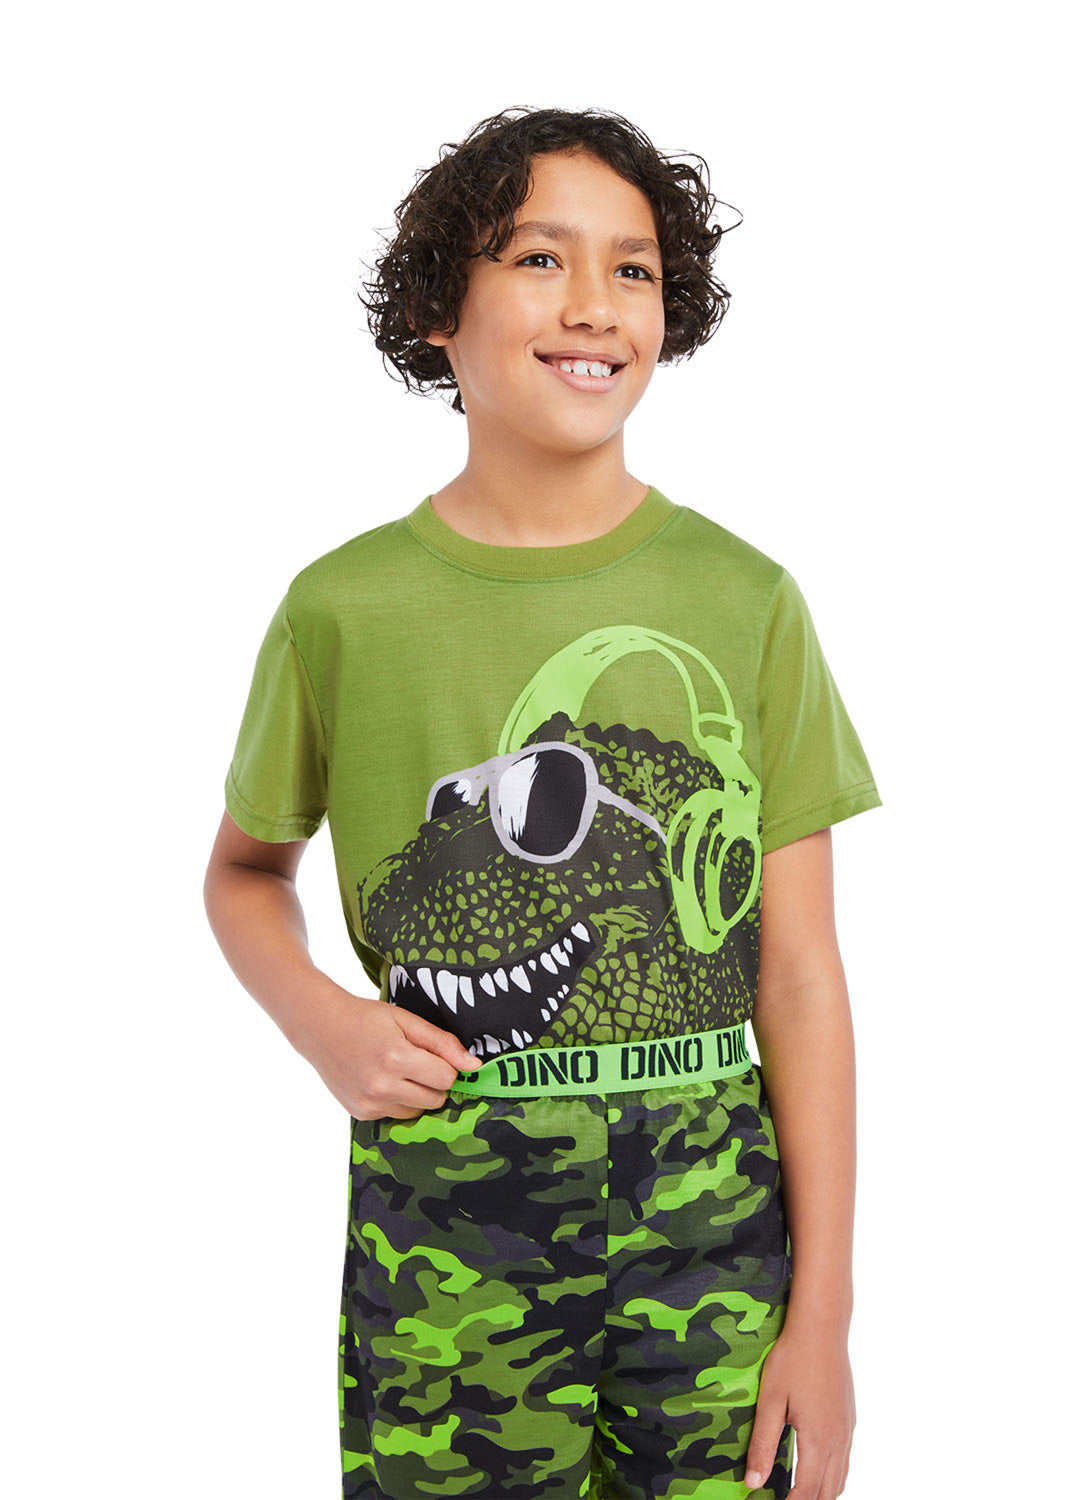 Detail Boy wearing Dino t-shirt print with Camo shorts (green)